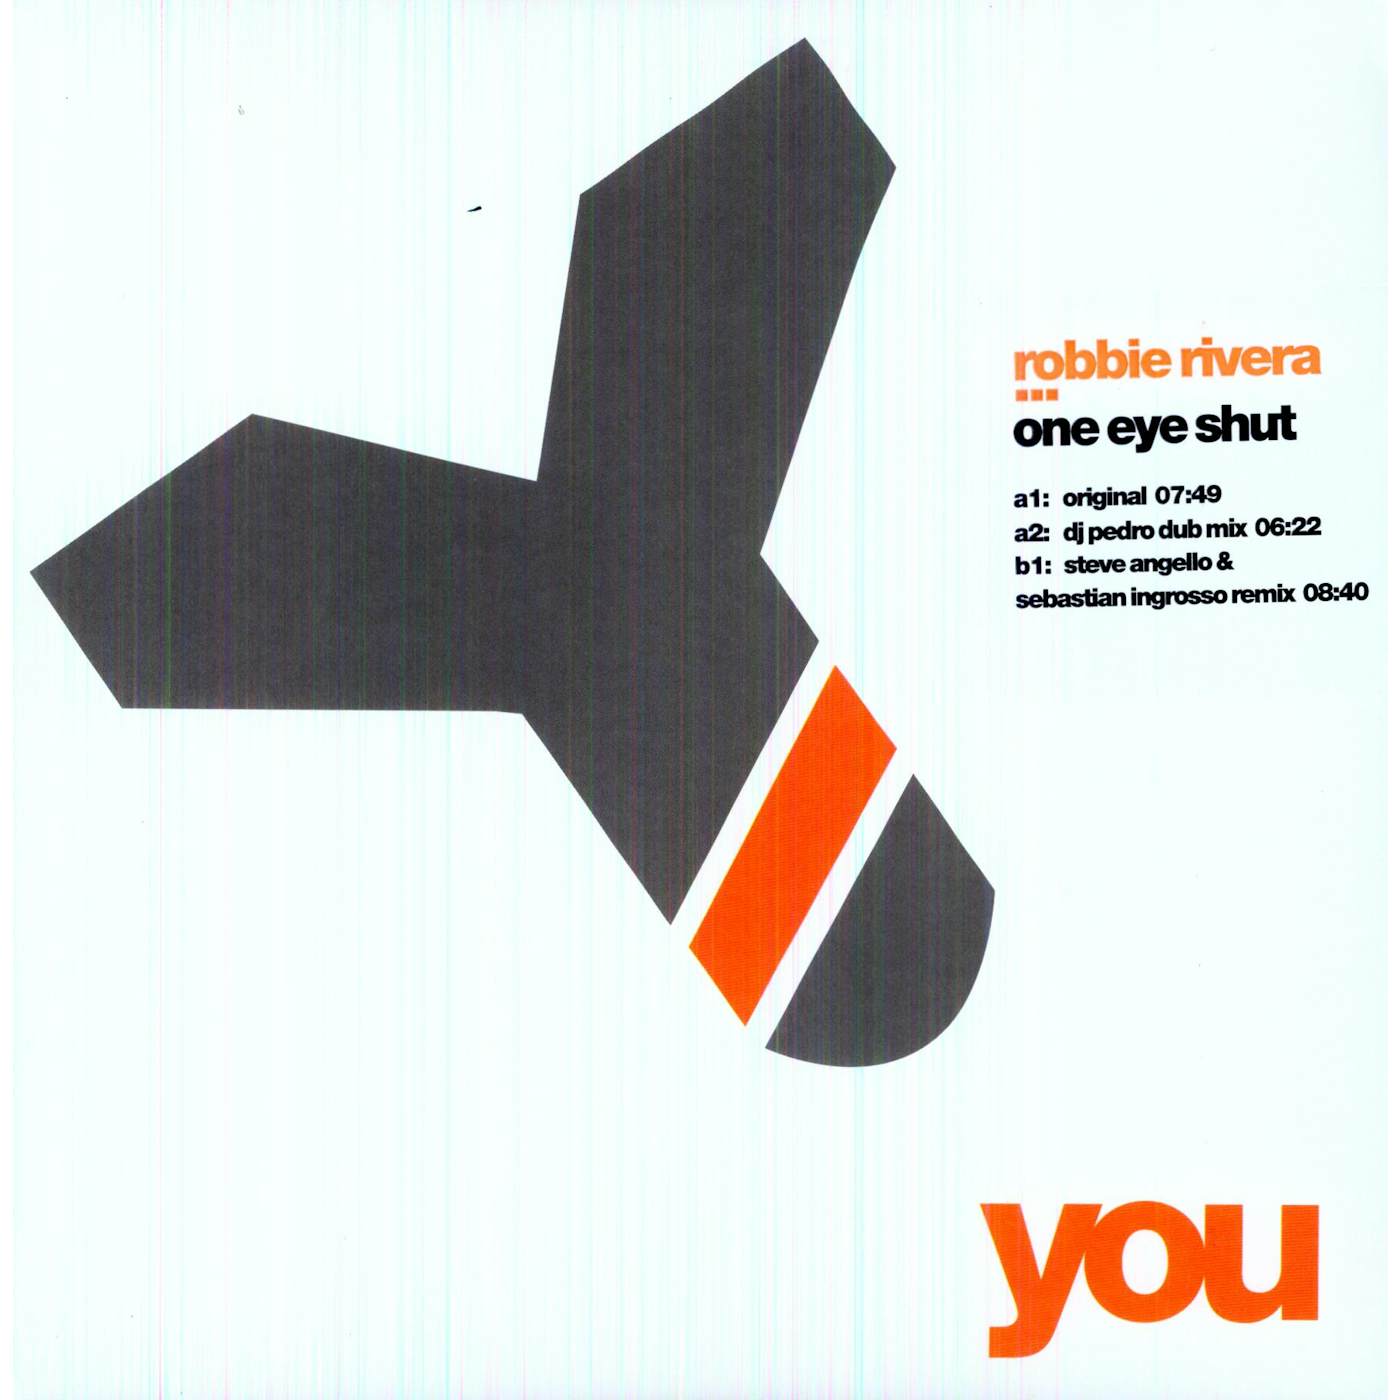 Robbie Rivera One Eye Shut Vinyl Record